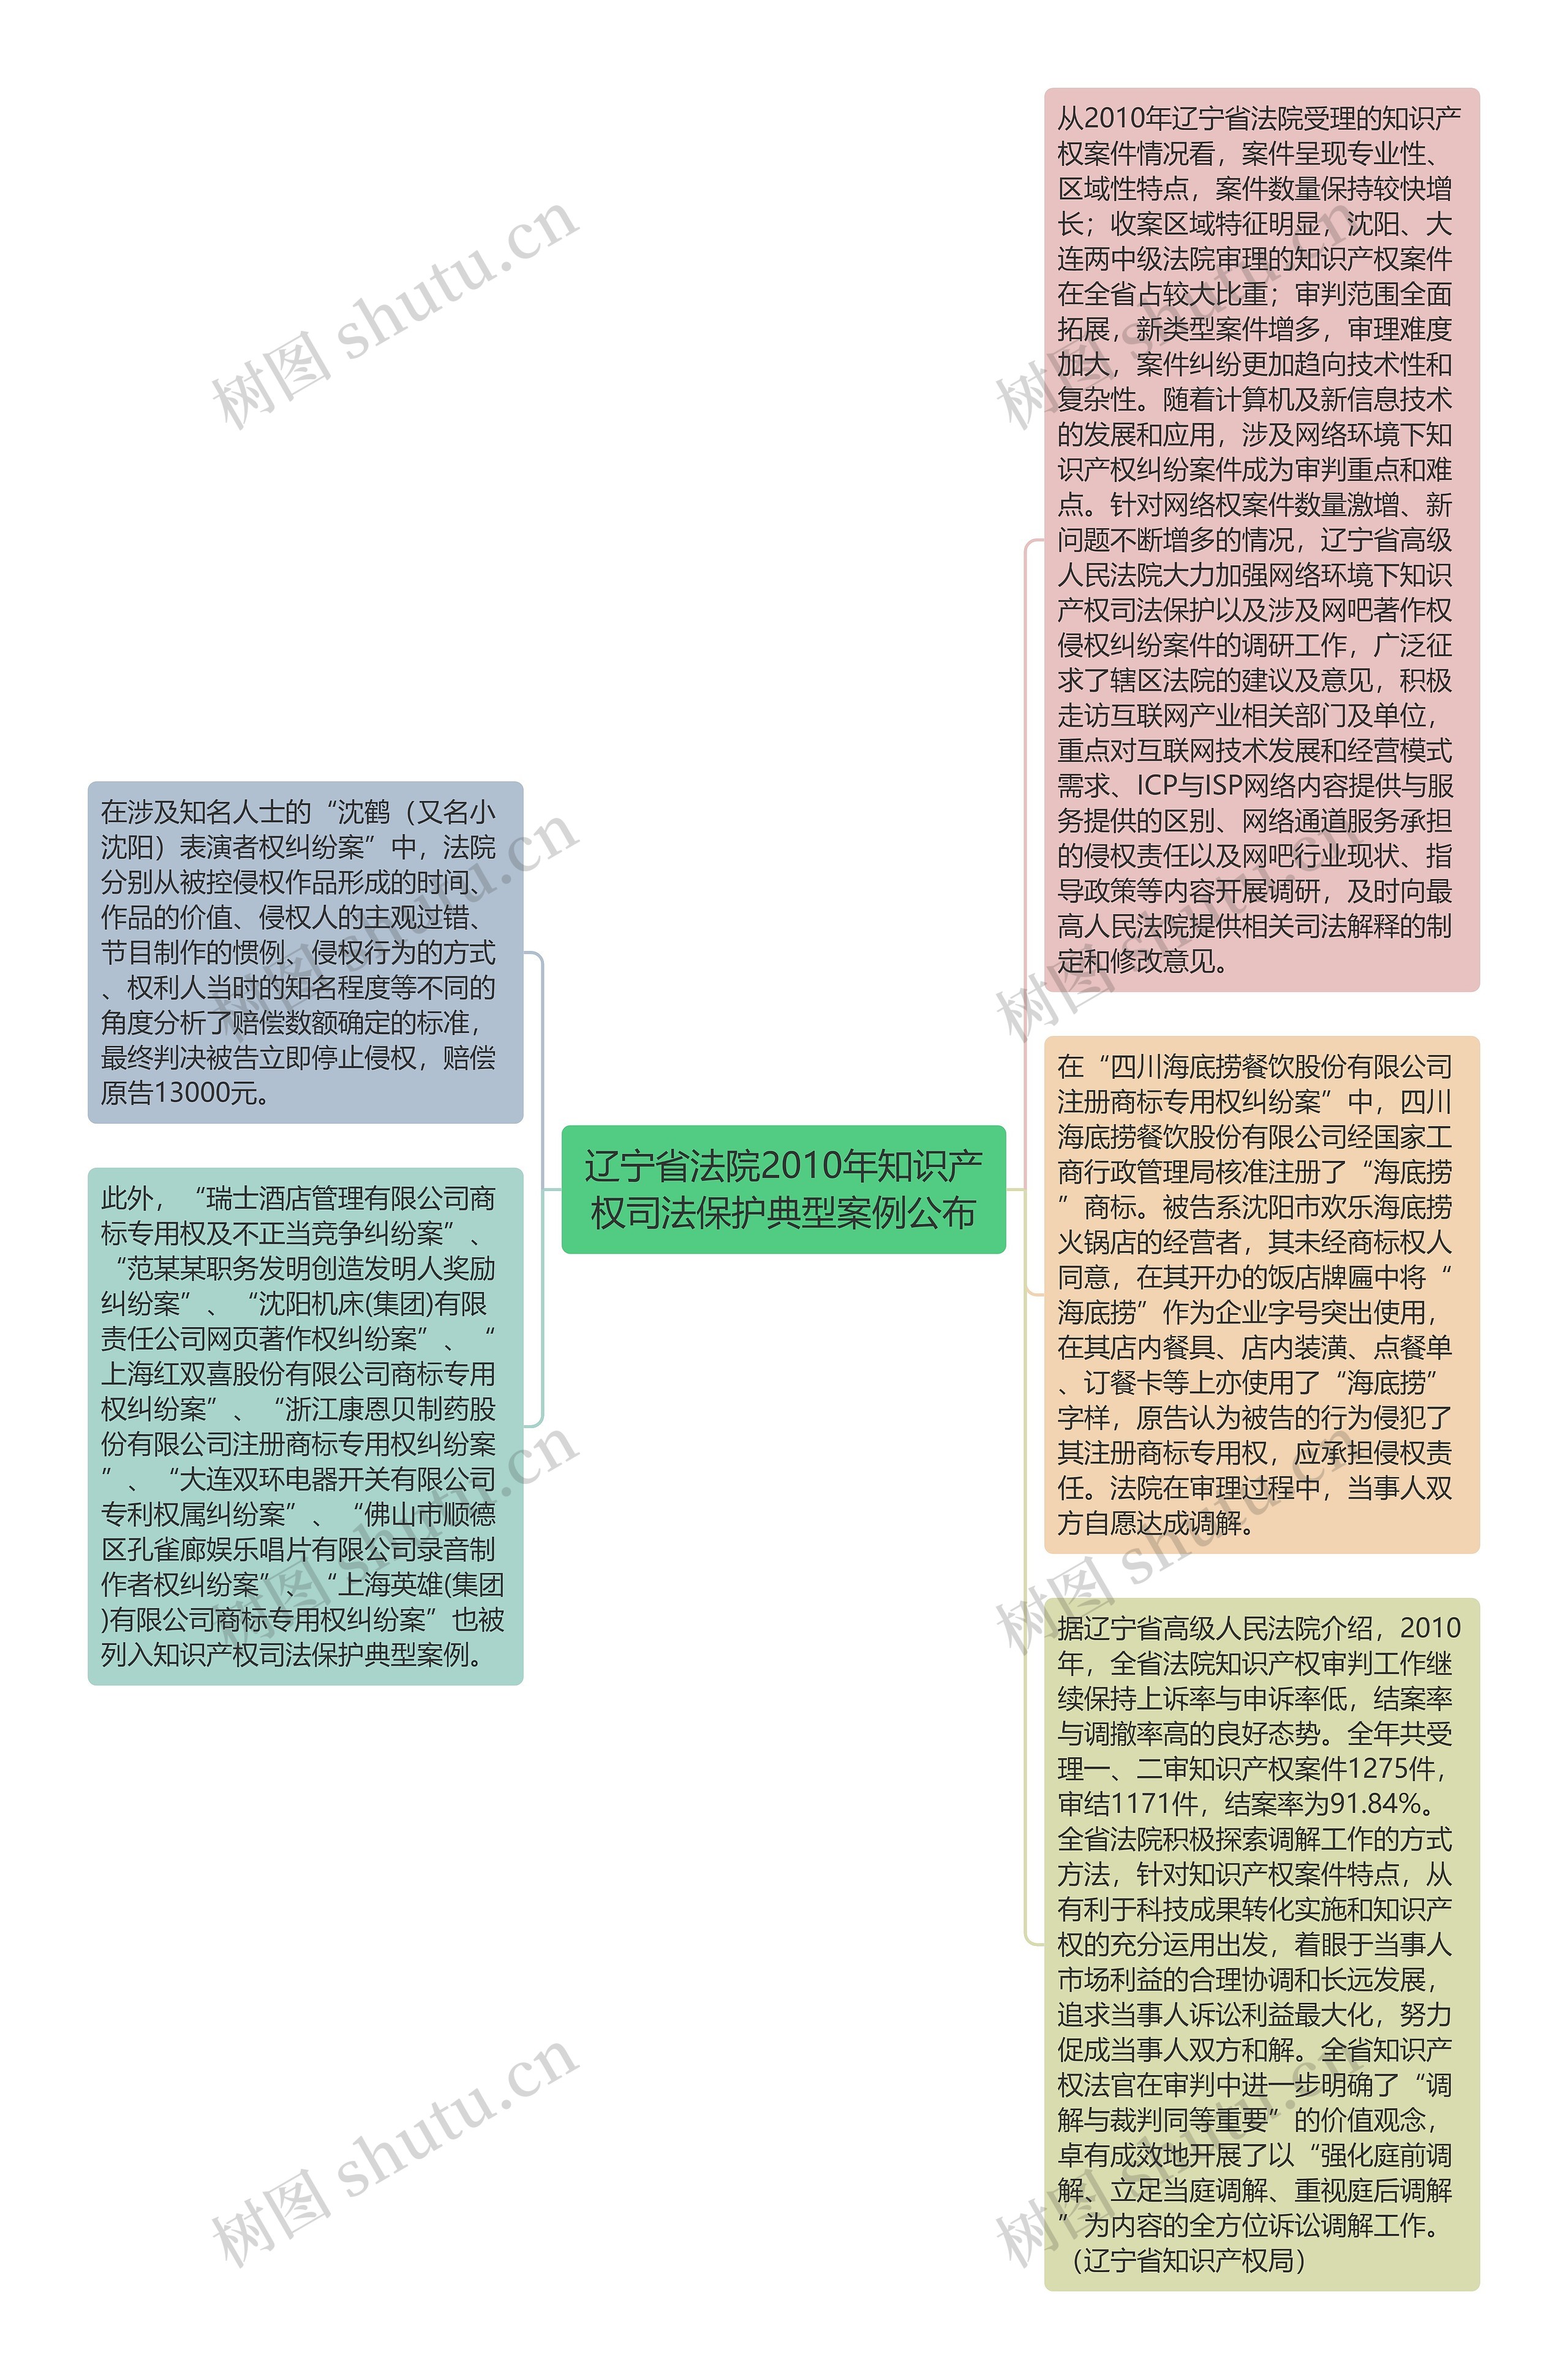 辽宁省法院2010年知识产权司法保护典型案例公布